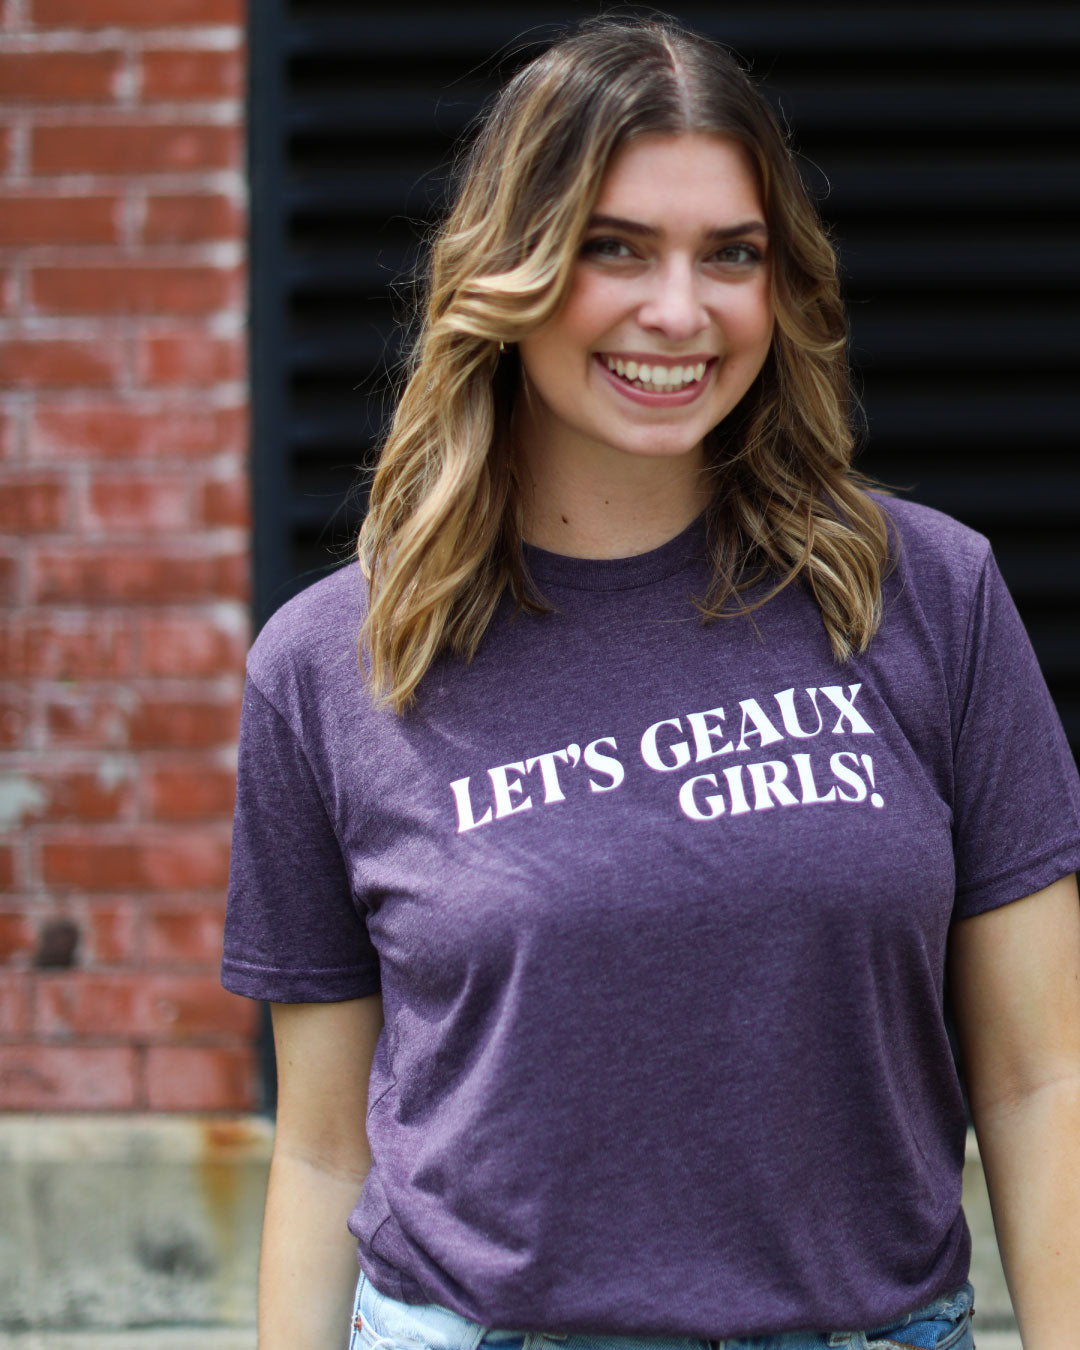 Let's Geaux Girls